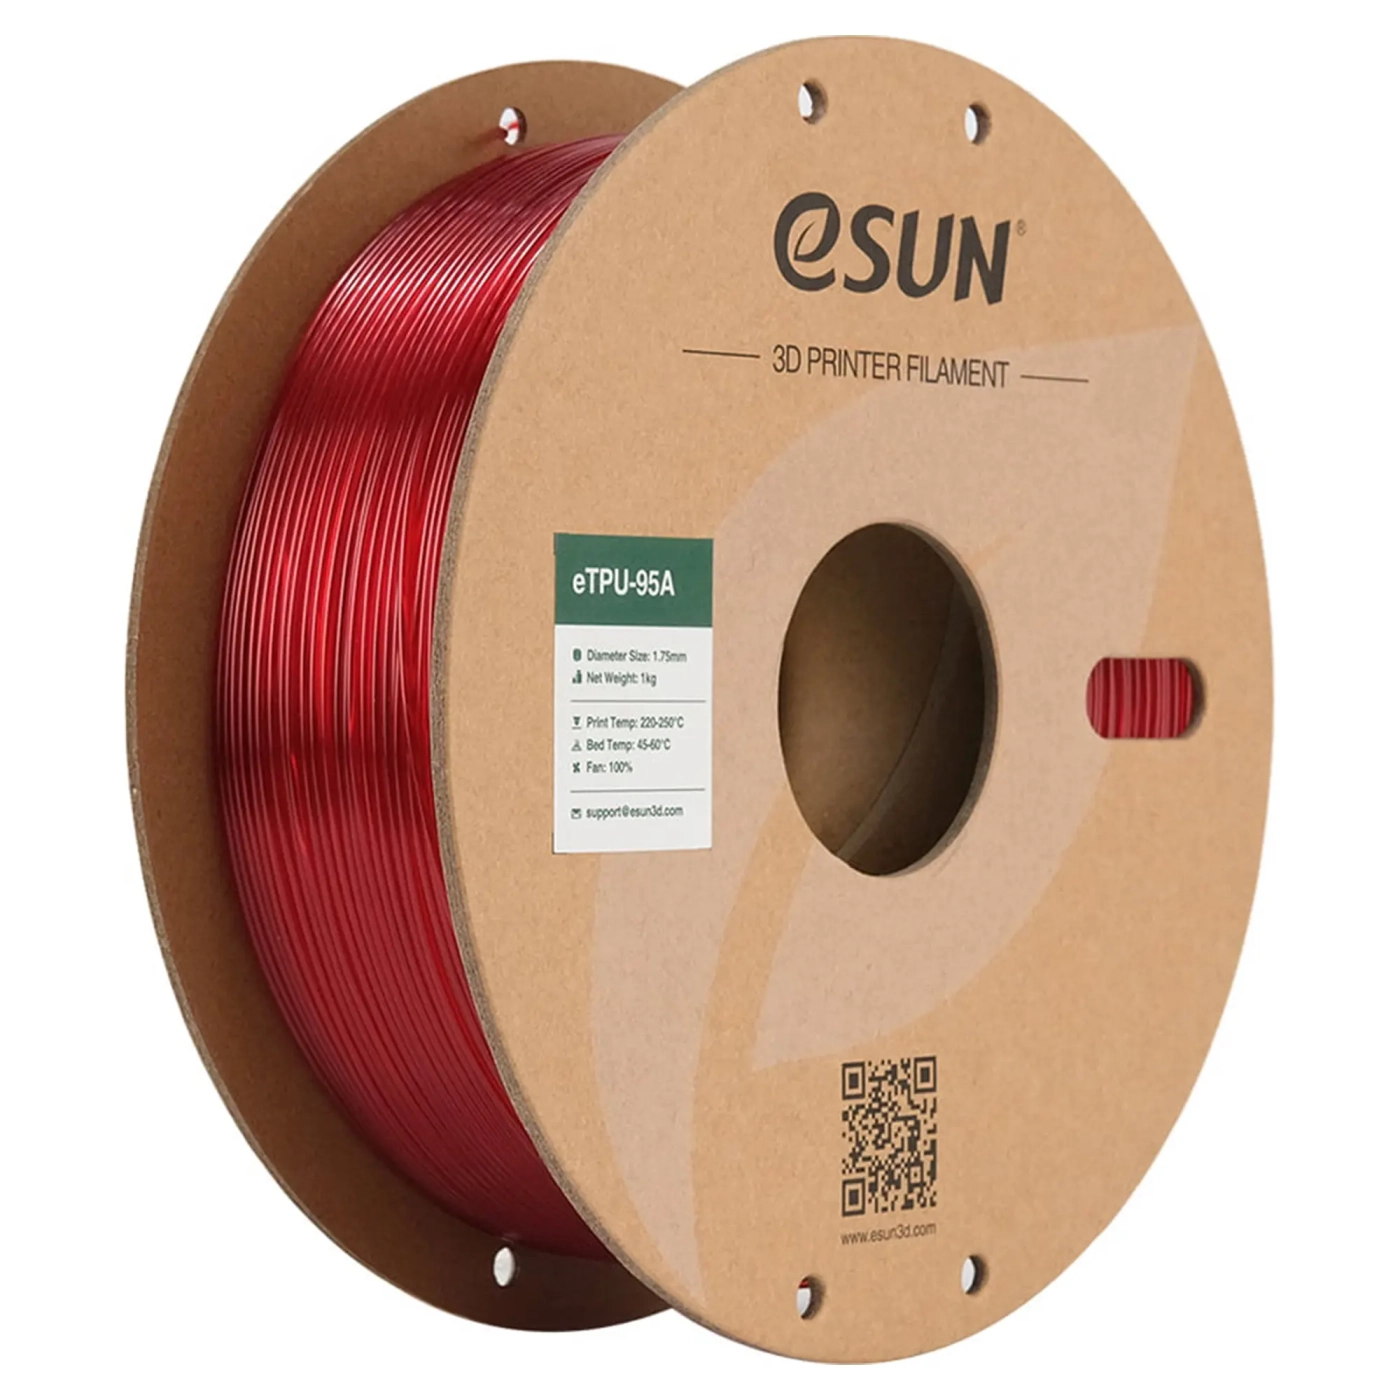 Купить eTPU-95A Filament (пластик) для 3D принтера eSUN 1кг, 1.75мм, прозрачный красный (ETPU-95A175GR1) - фото 1